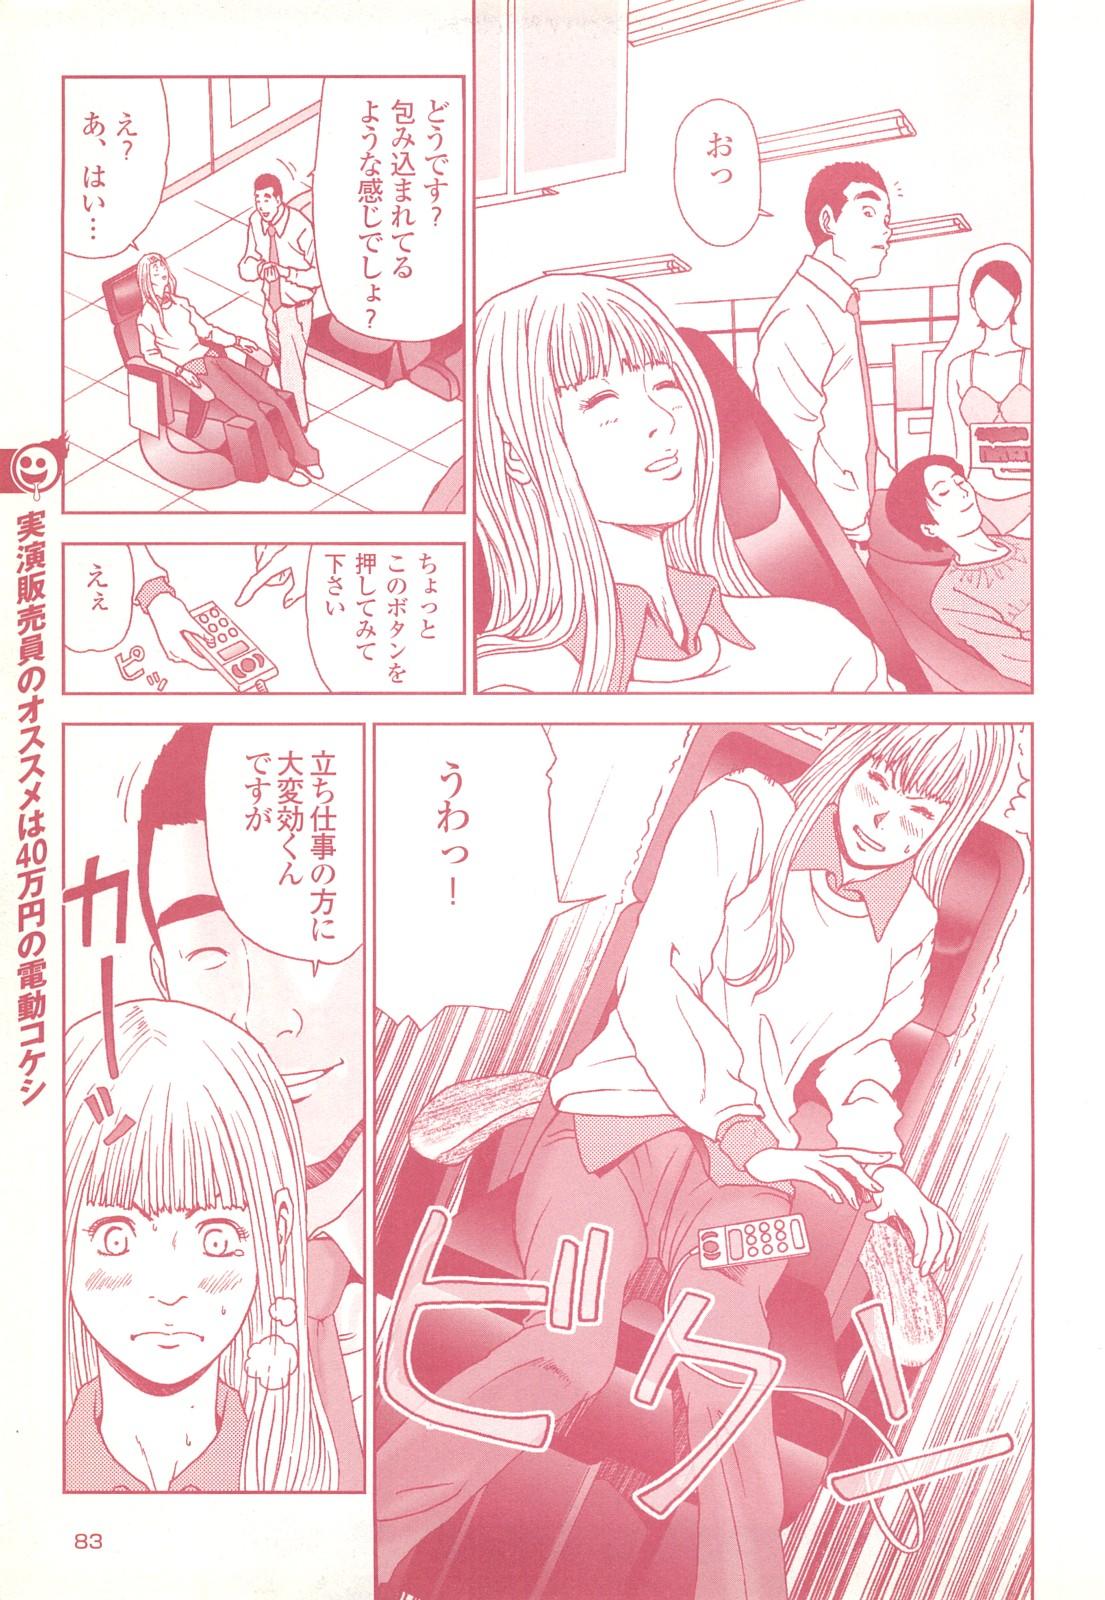 コミック裏モノJAPAN Vol.18 今井のりたつスペシャル号 82